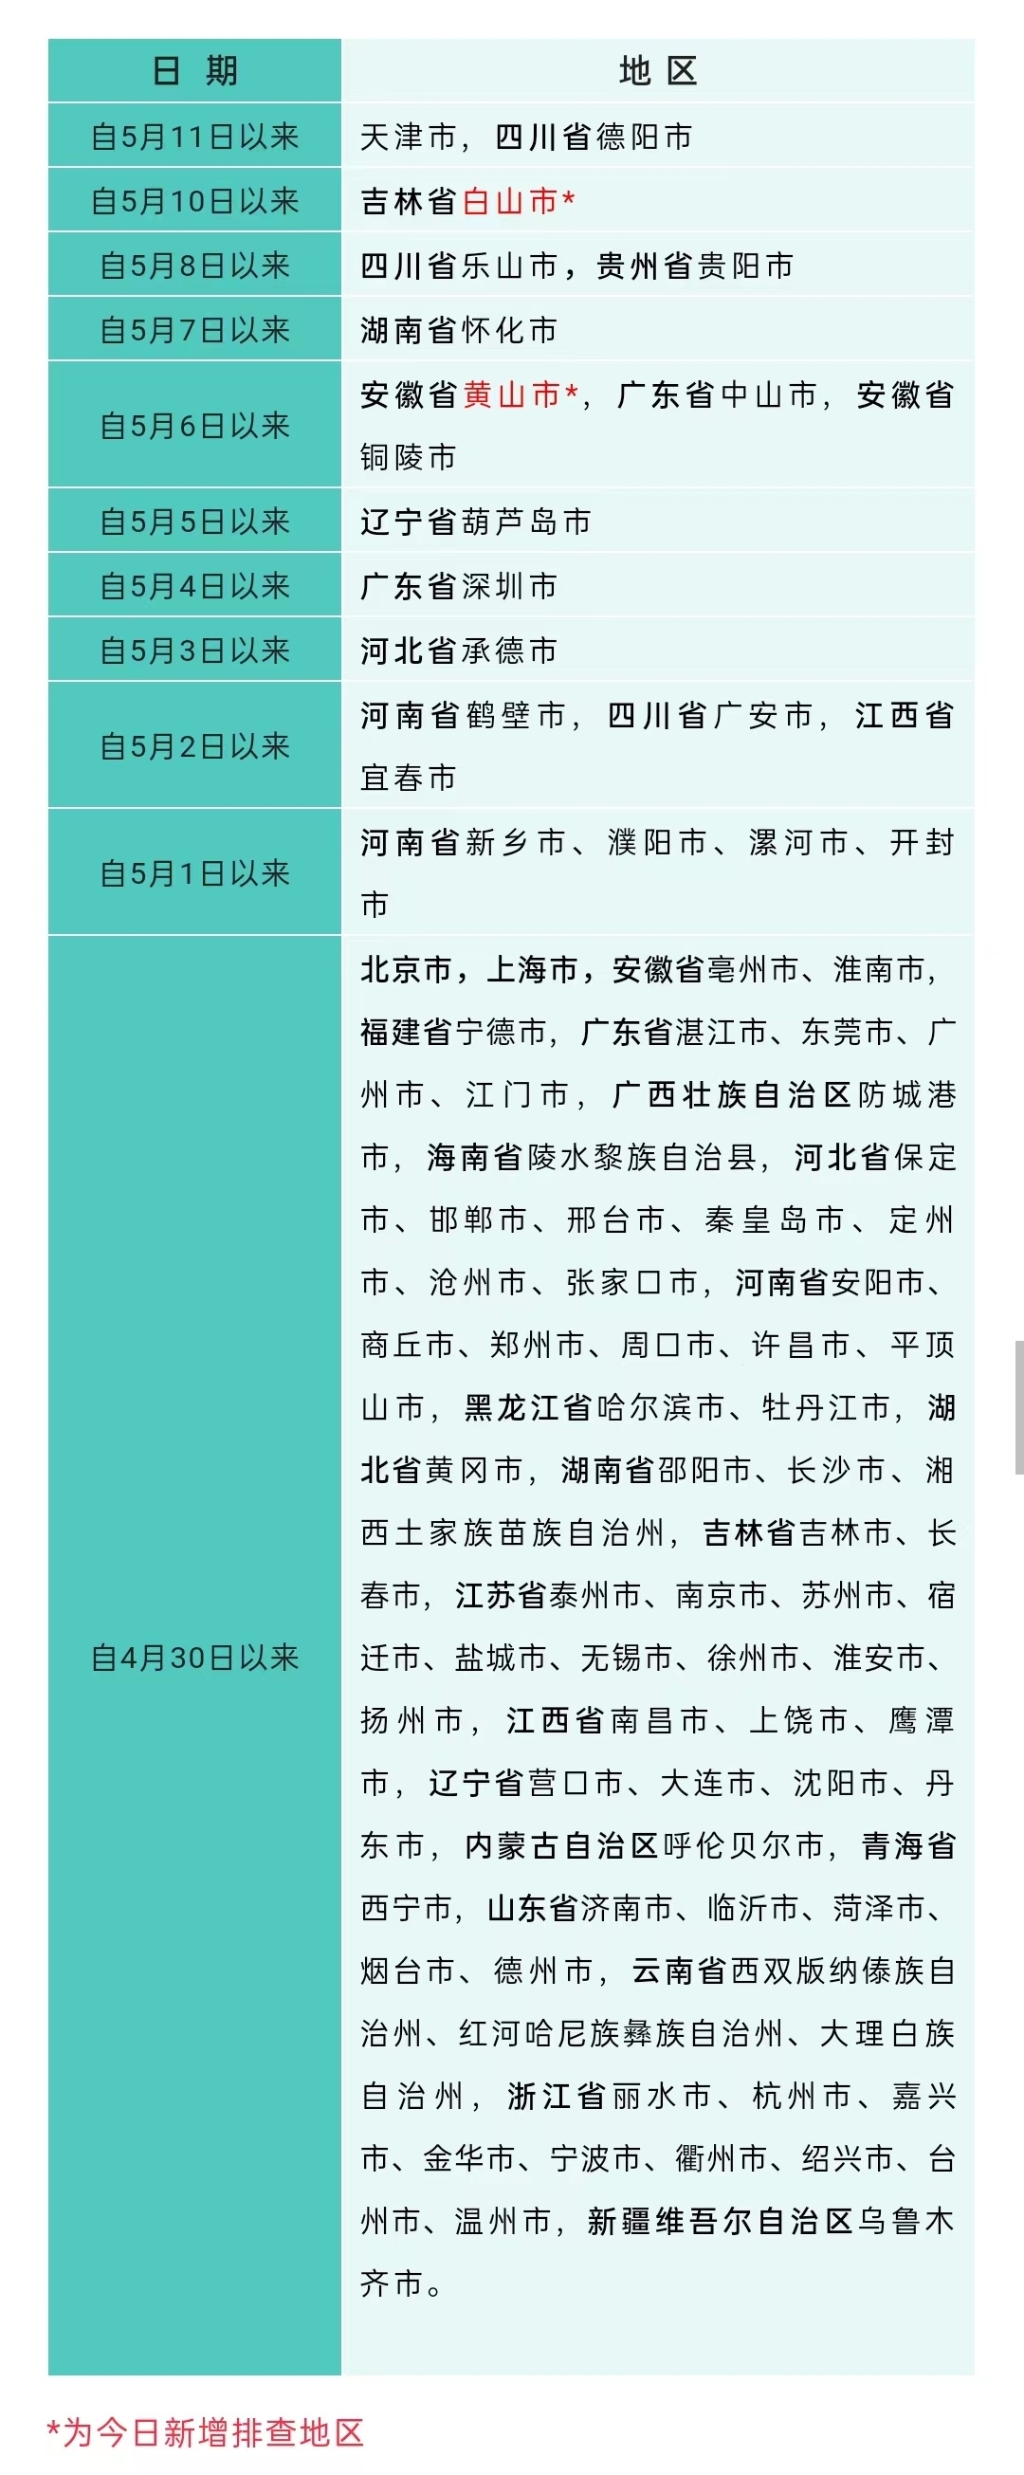 凤凰城娱乐平台重庆疾控：调整广安来渝措施 新增重点排查地2个